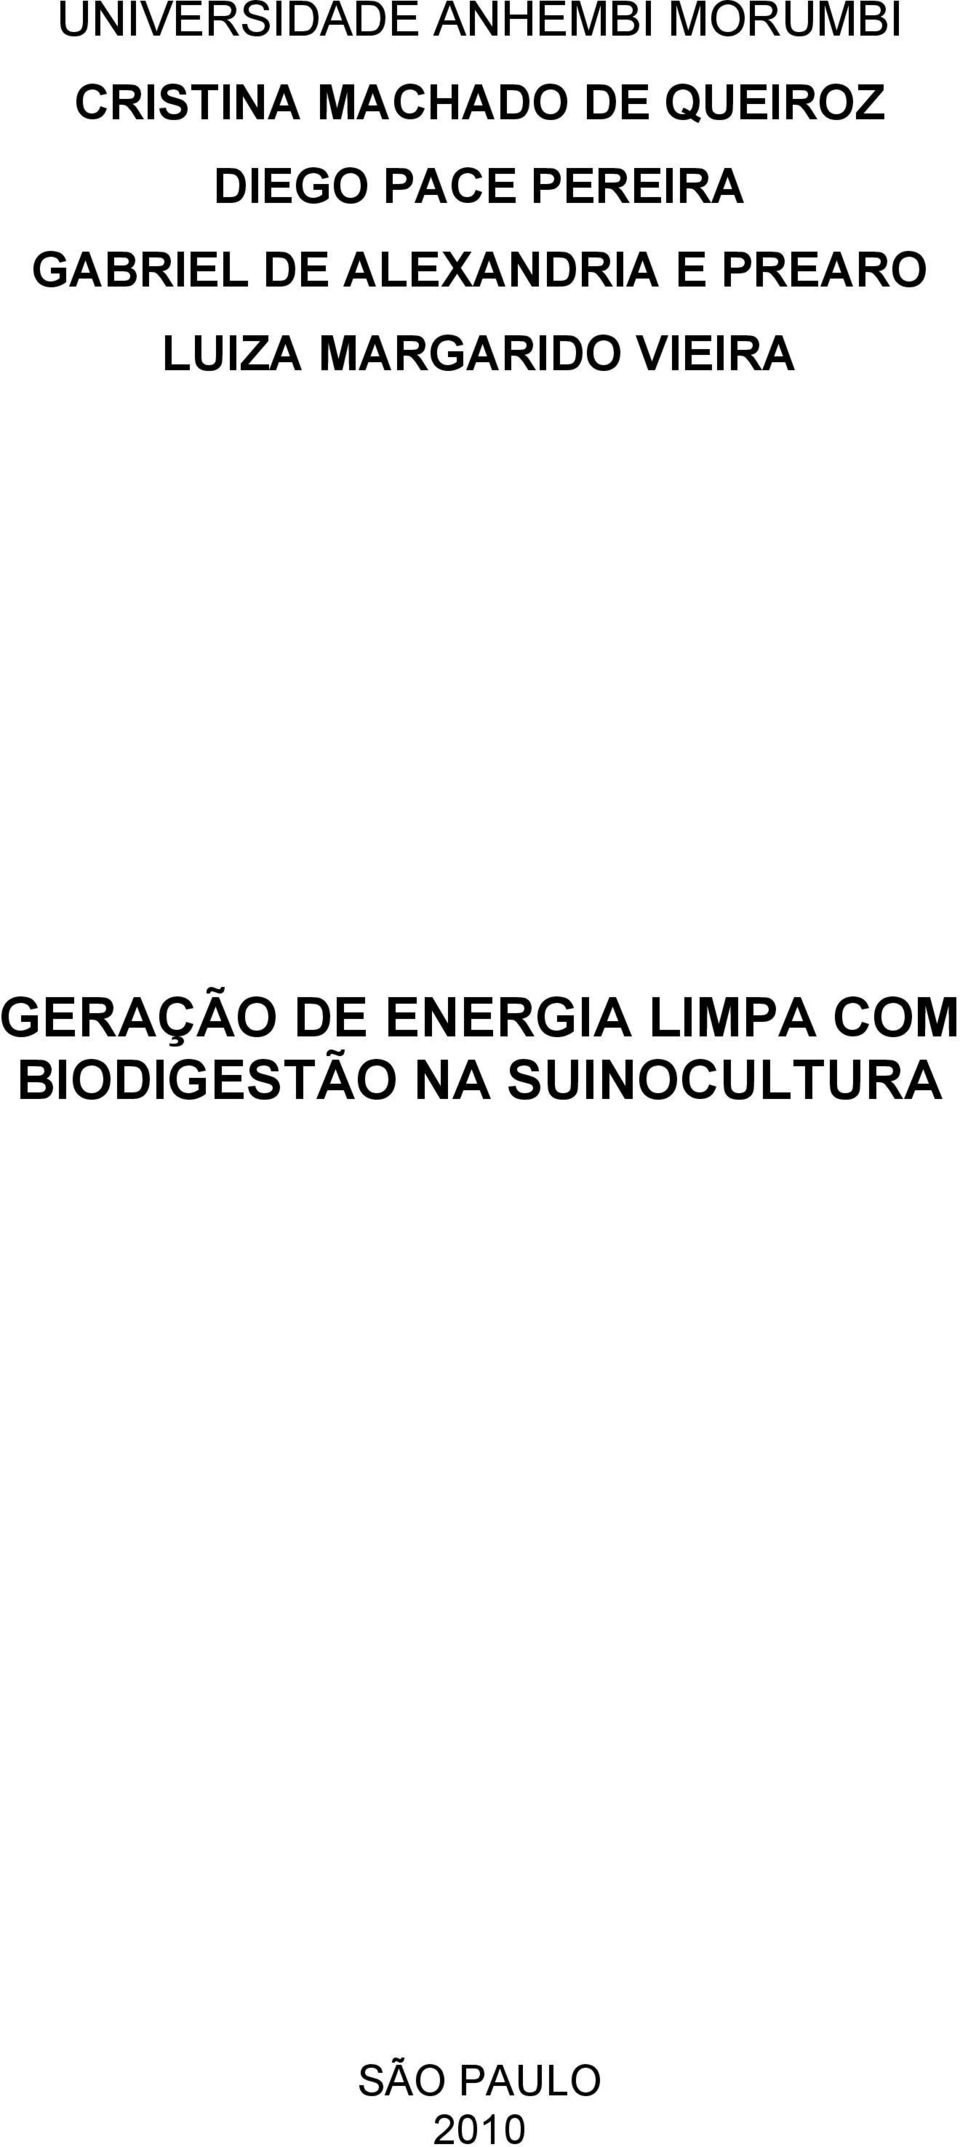 PREARO LUIZA MARGARIDO VIEIRA GERAÇÃO DE ENERGIA